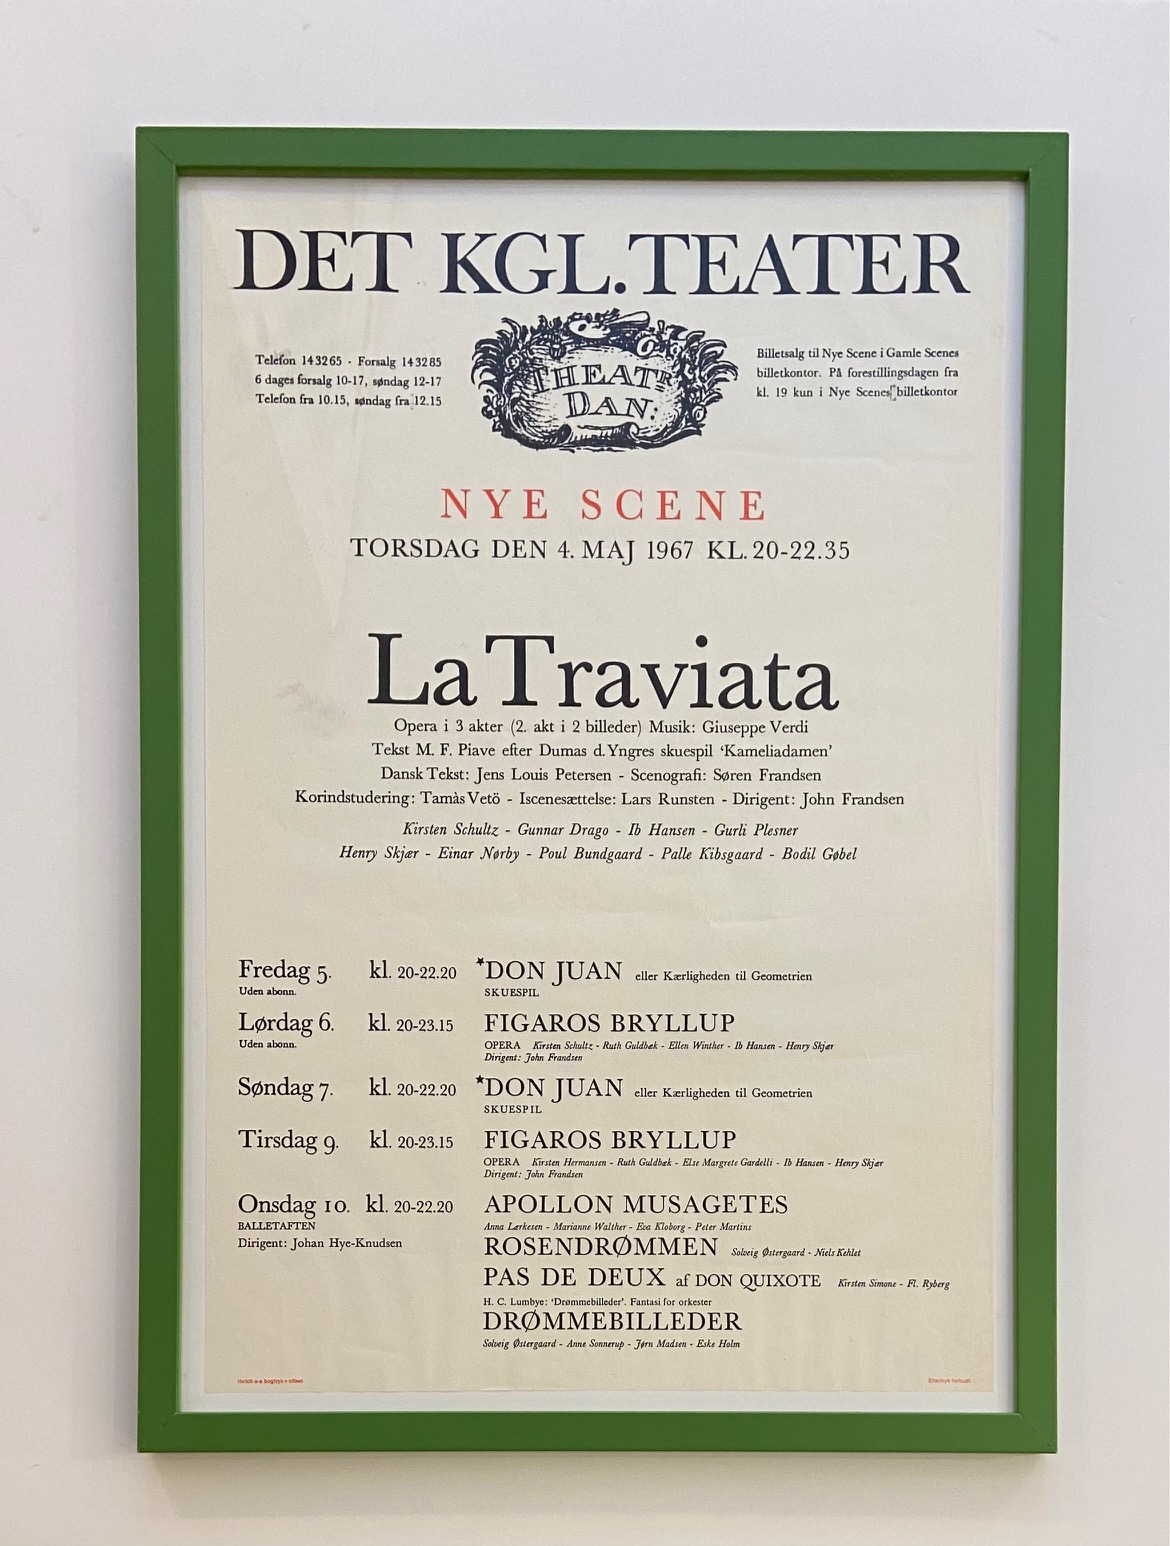 Det Kgl. Teater - La Traviata 1967 Framed by Frøde